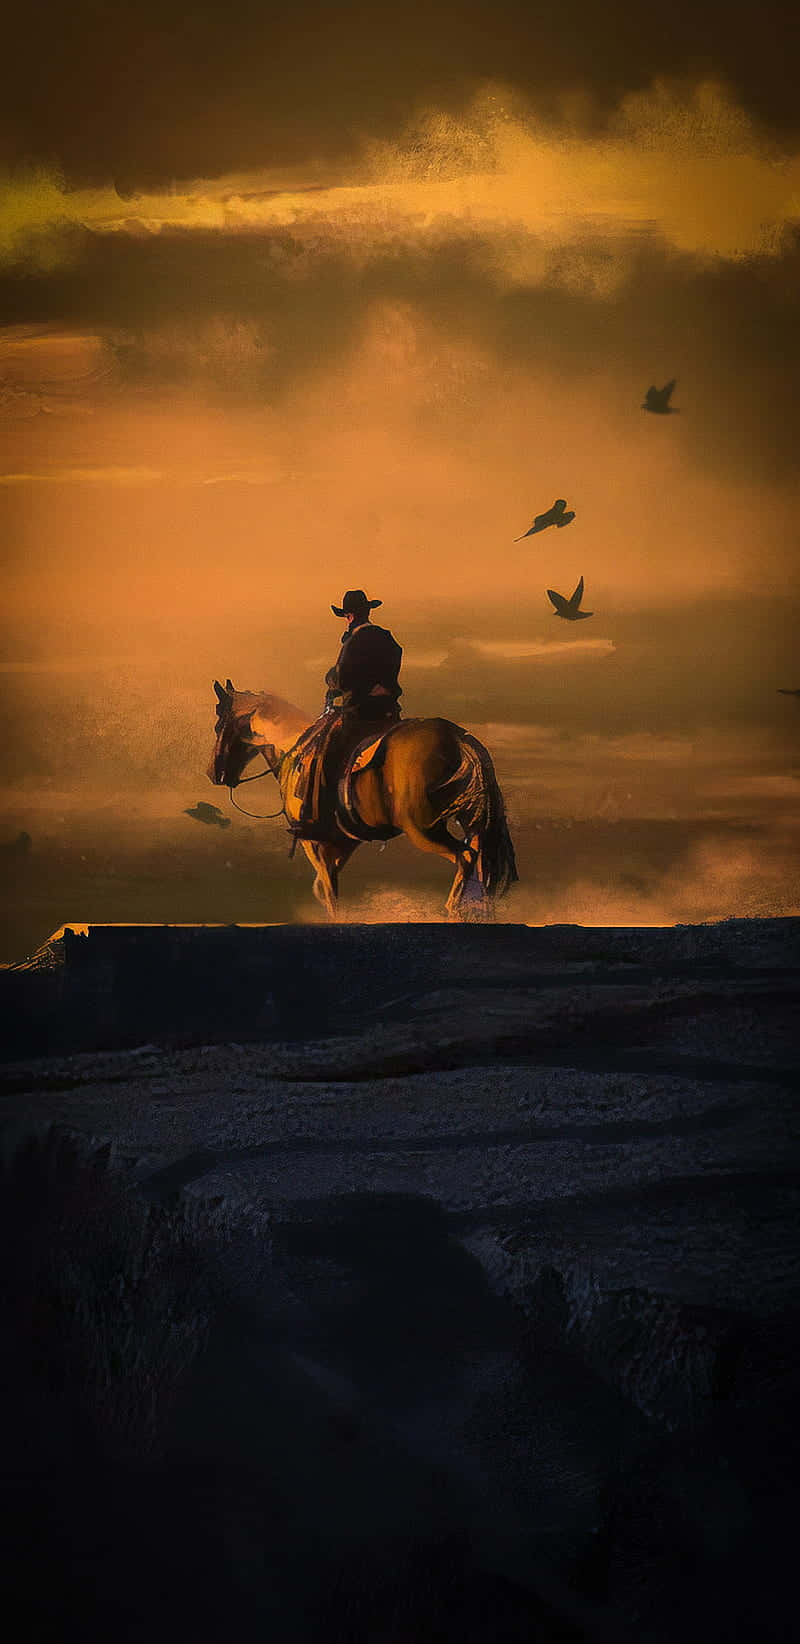 Migliorsfondo Di Red Dead Redemption 2 Con Un Cowboy Che Cavalca Un Cavallo Sulla Cima Di Una Montagna.